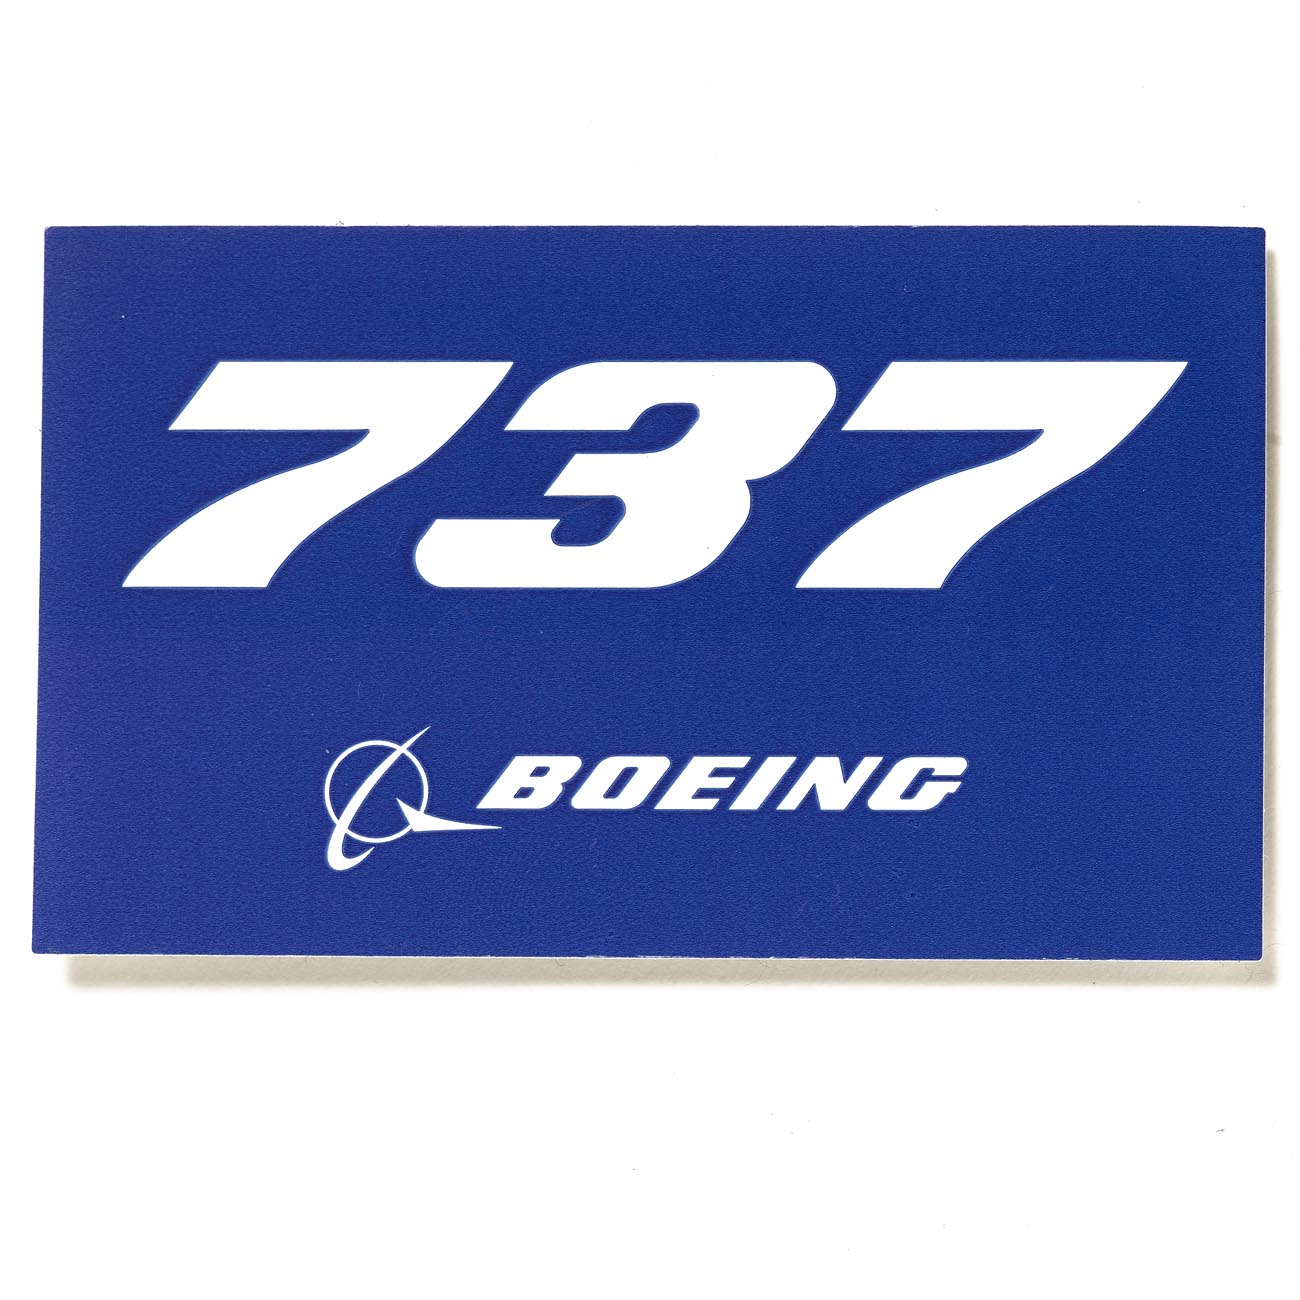 Boeing 737 Blue Sticker (6402896006)